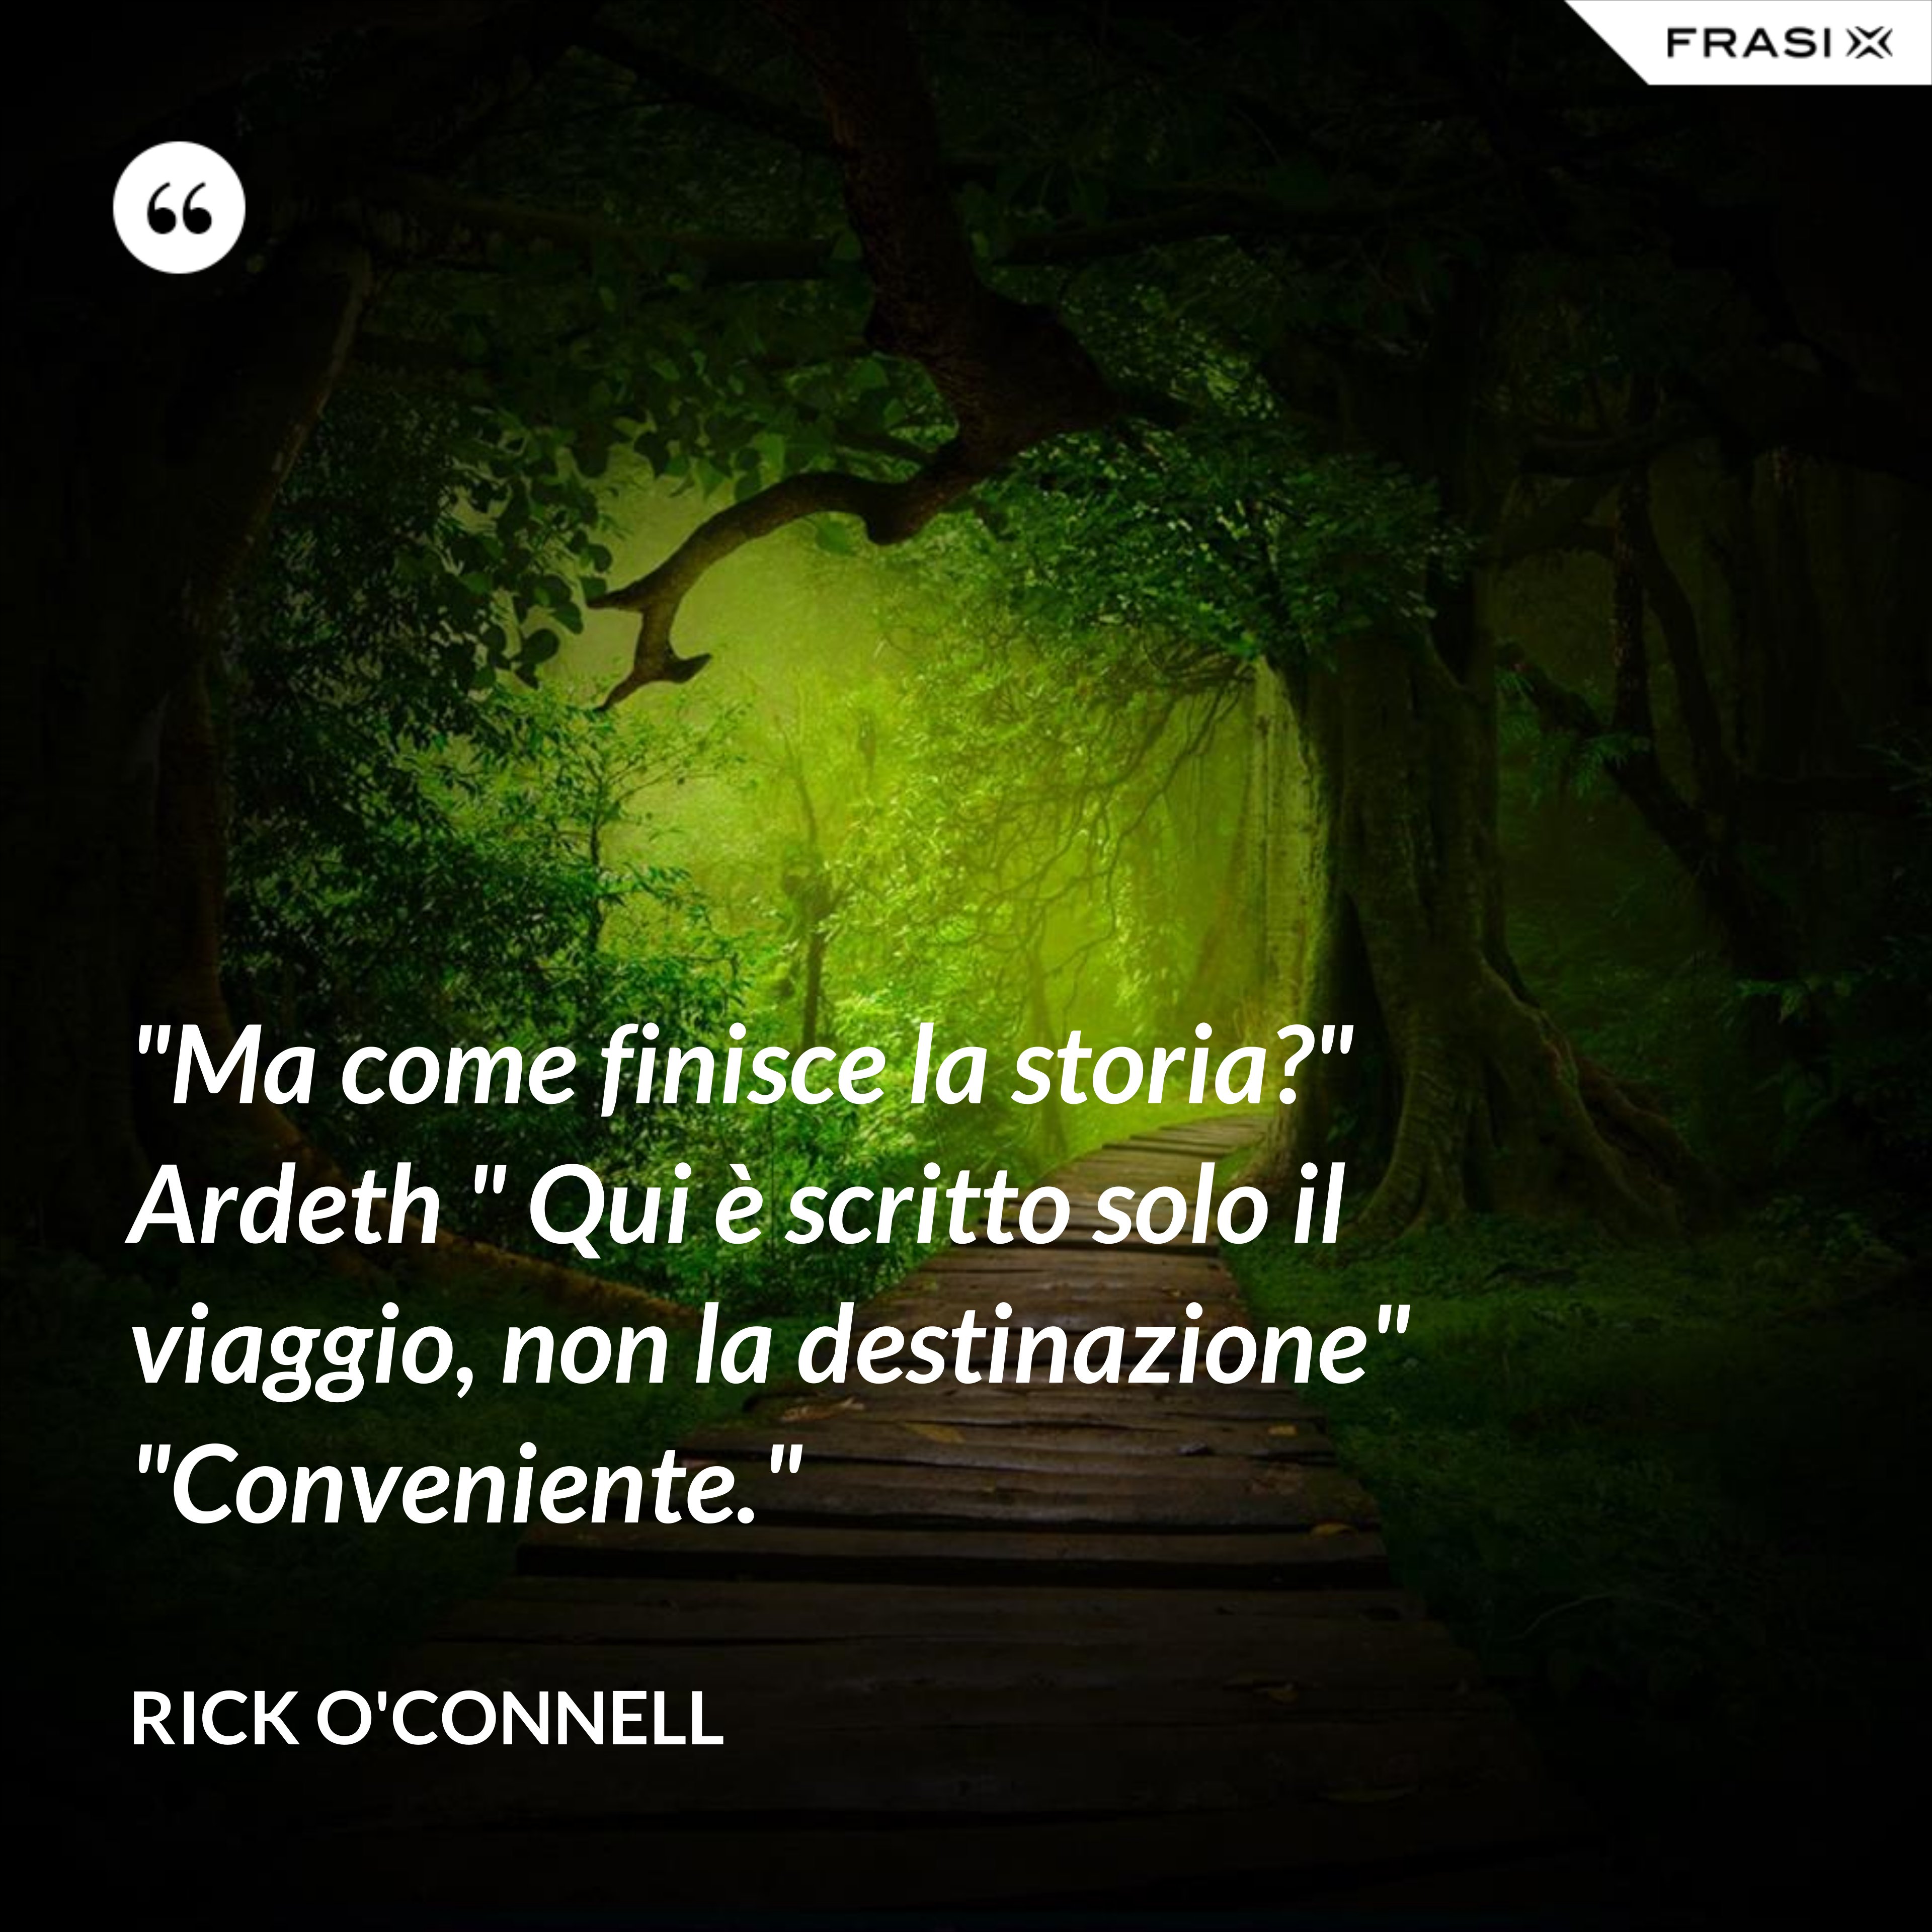 "Ma come finisce la storia?" Ardeth " Qui è scritto solo il viaggio, non la destinazione" "Conveniente." - Rick O'Connell